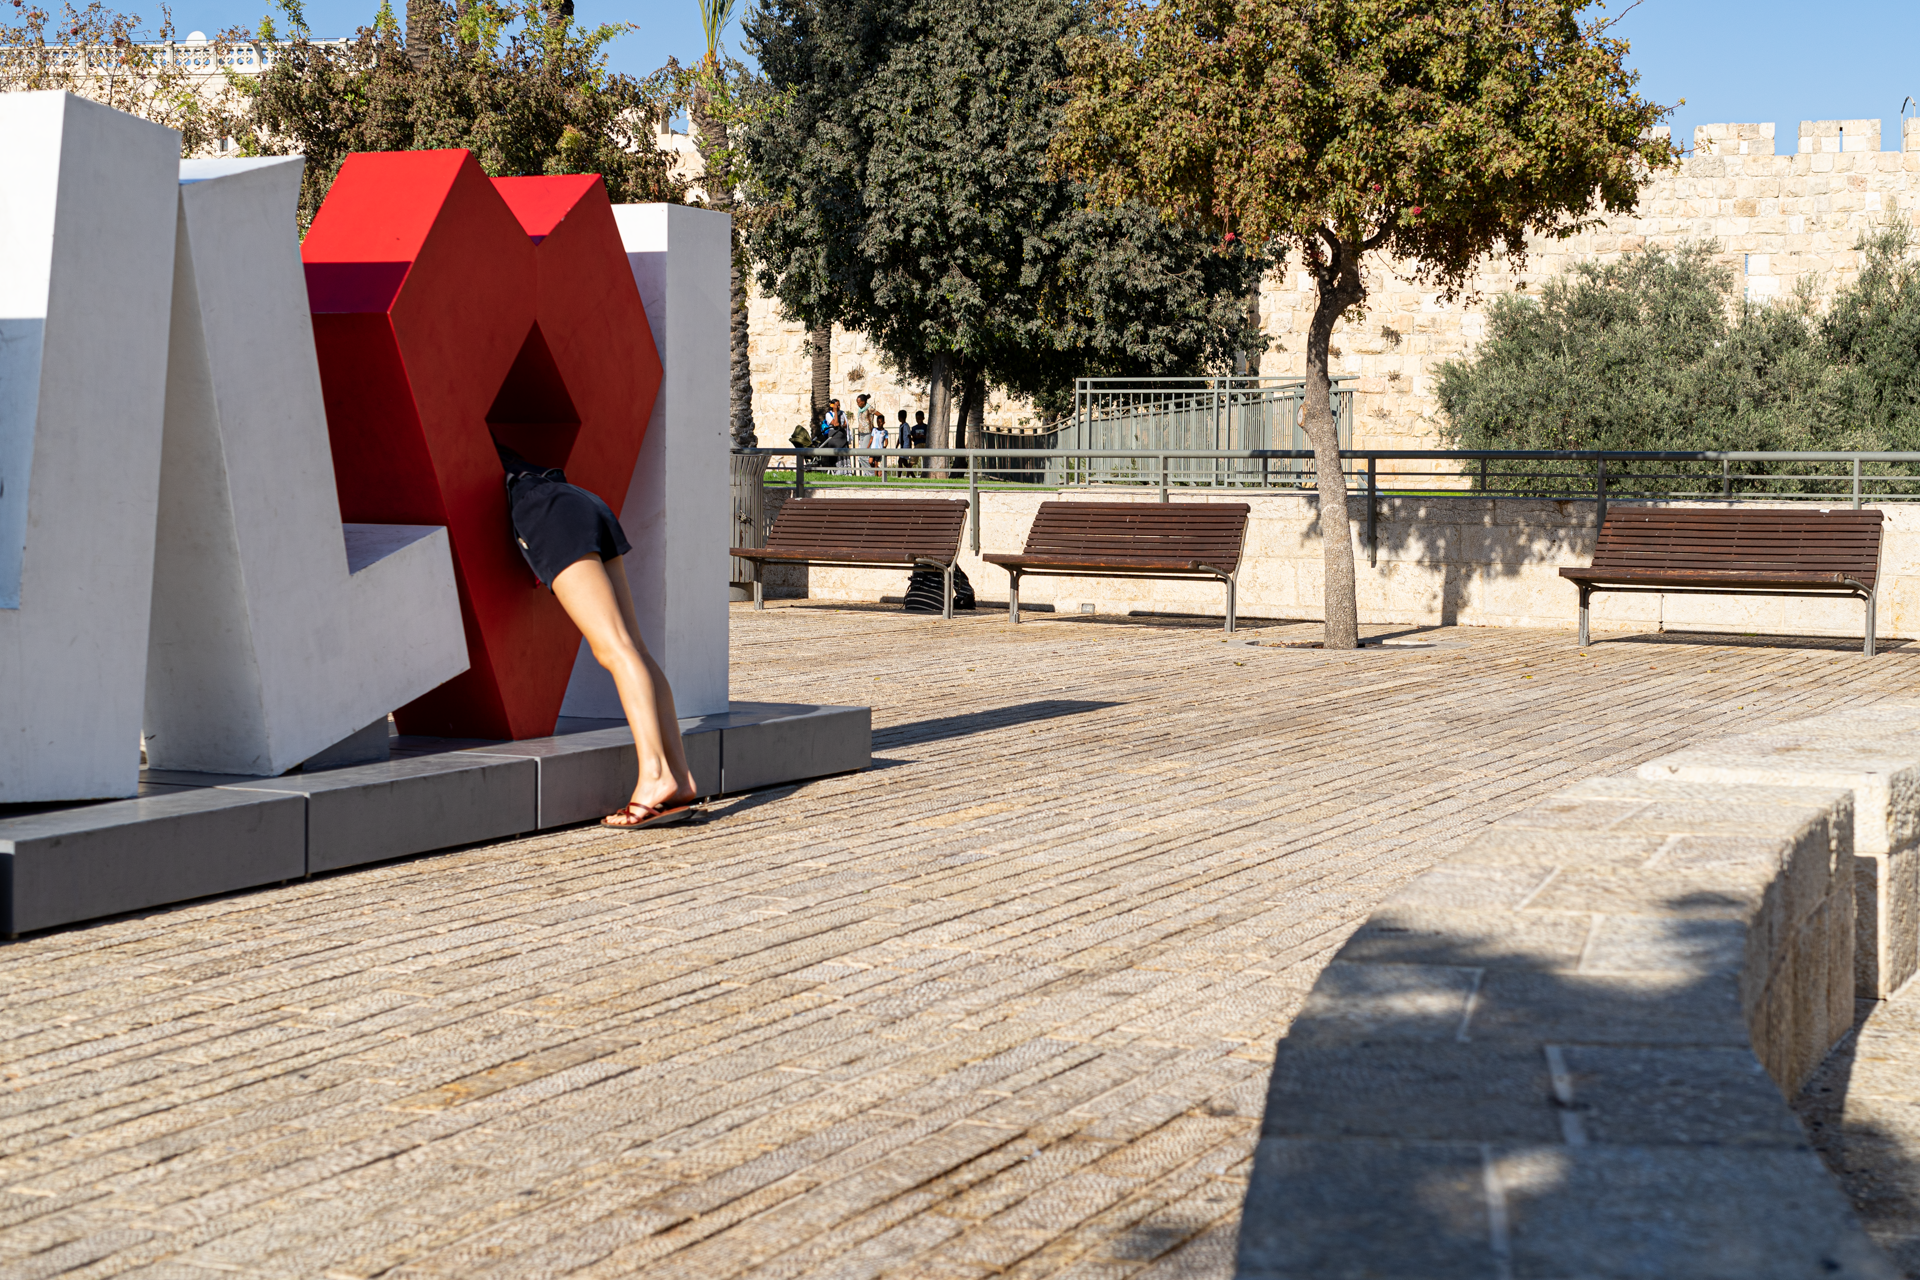 תמונה של אישה נכנסת לתוך פסל אותיות -  מתוך התערוכה פוטוריזם ירושלמי - עבודות סטודנטים במחלקה לצילום